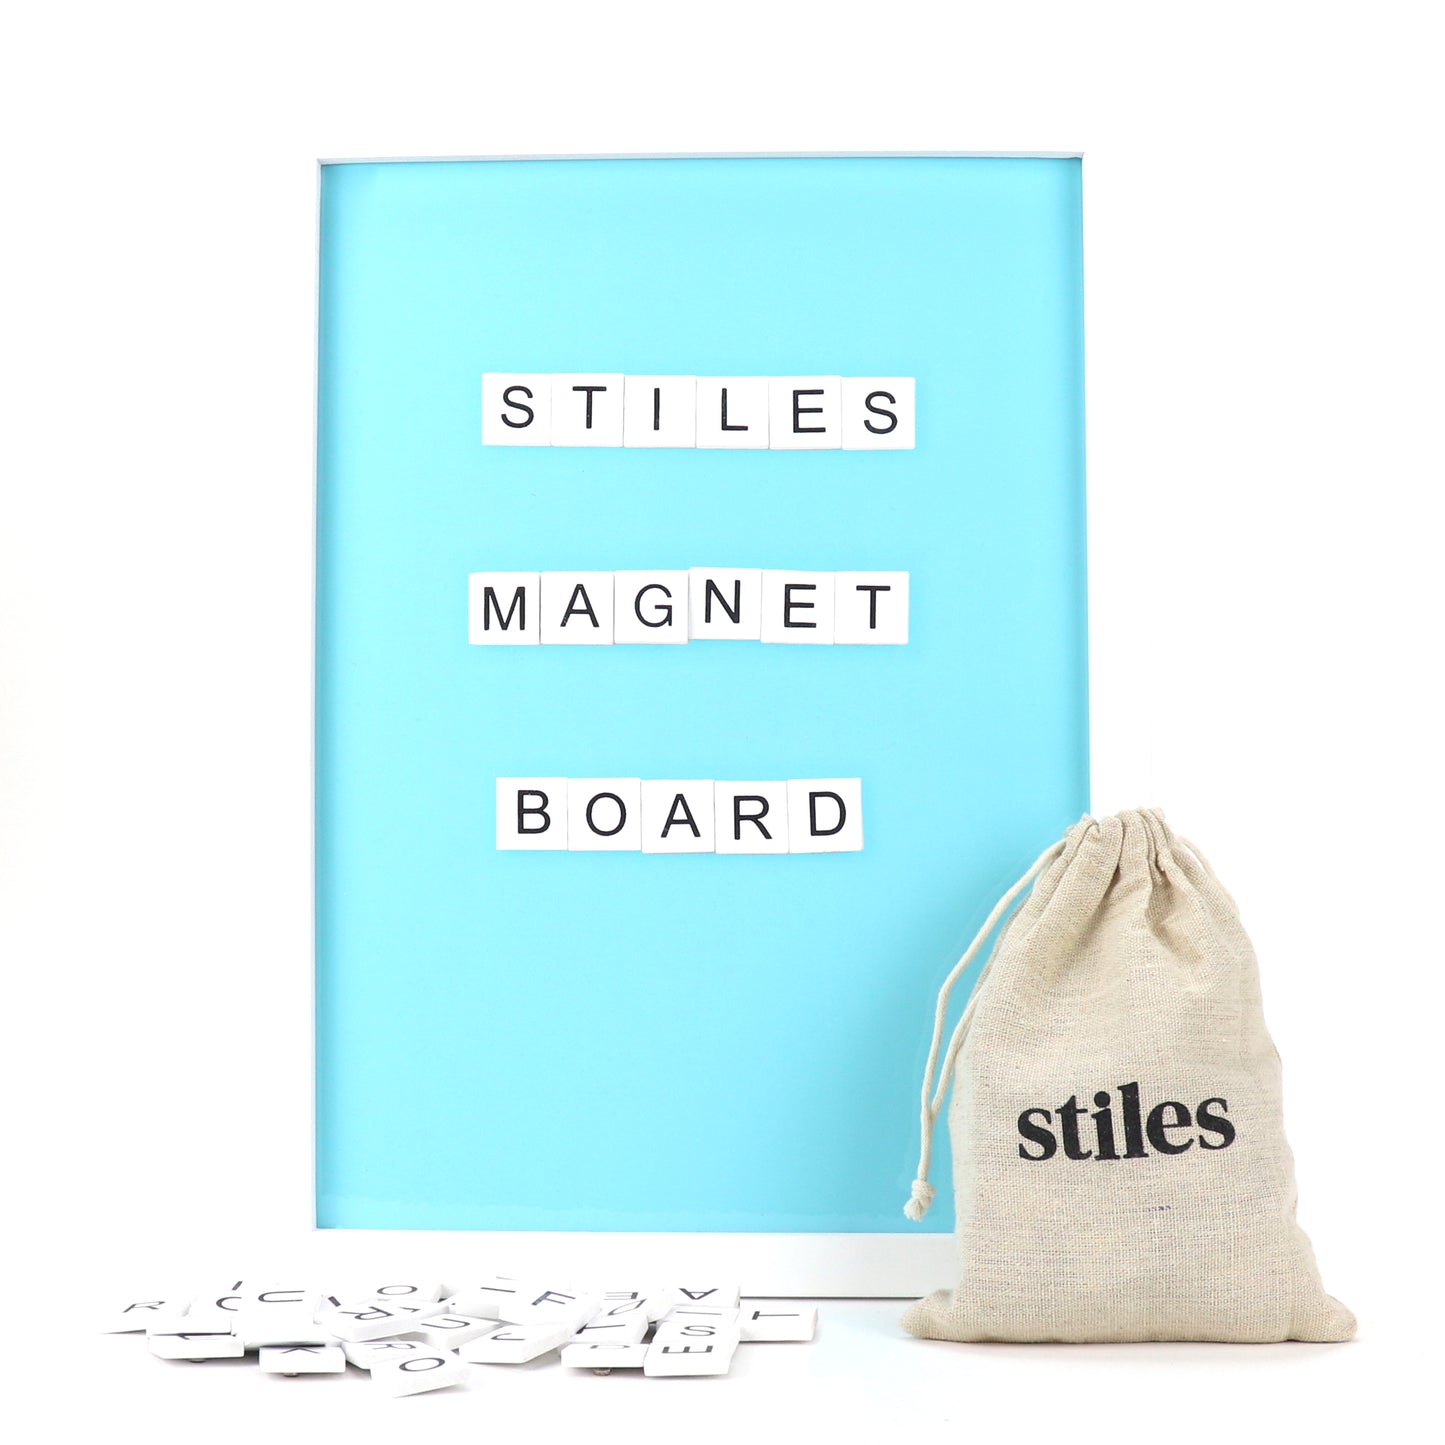 Magnetic Letter Board